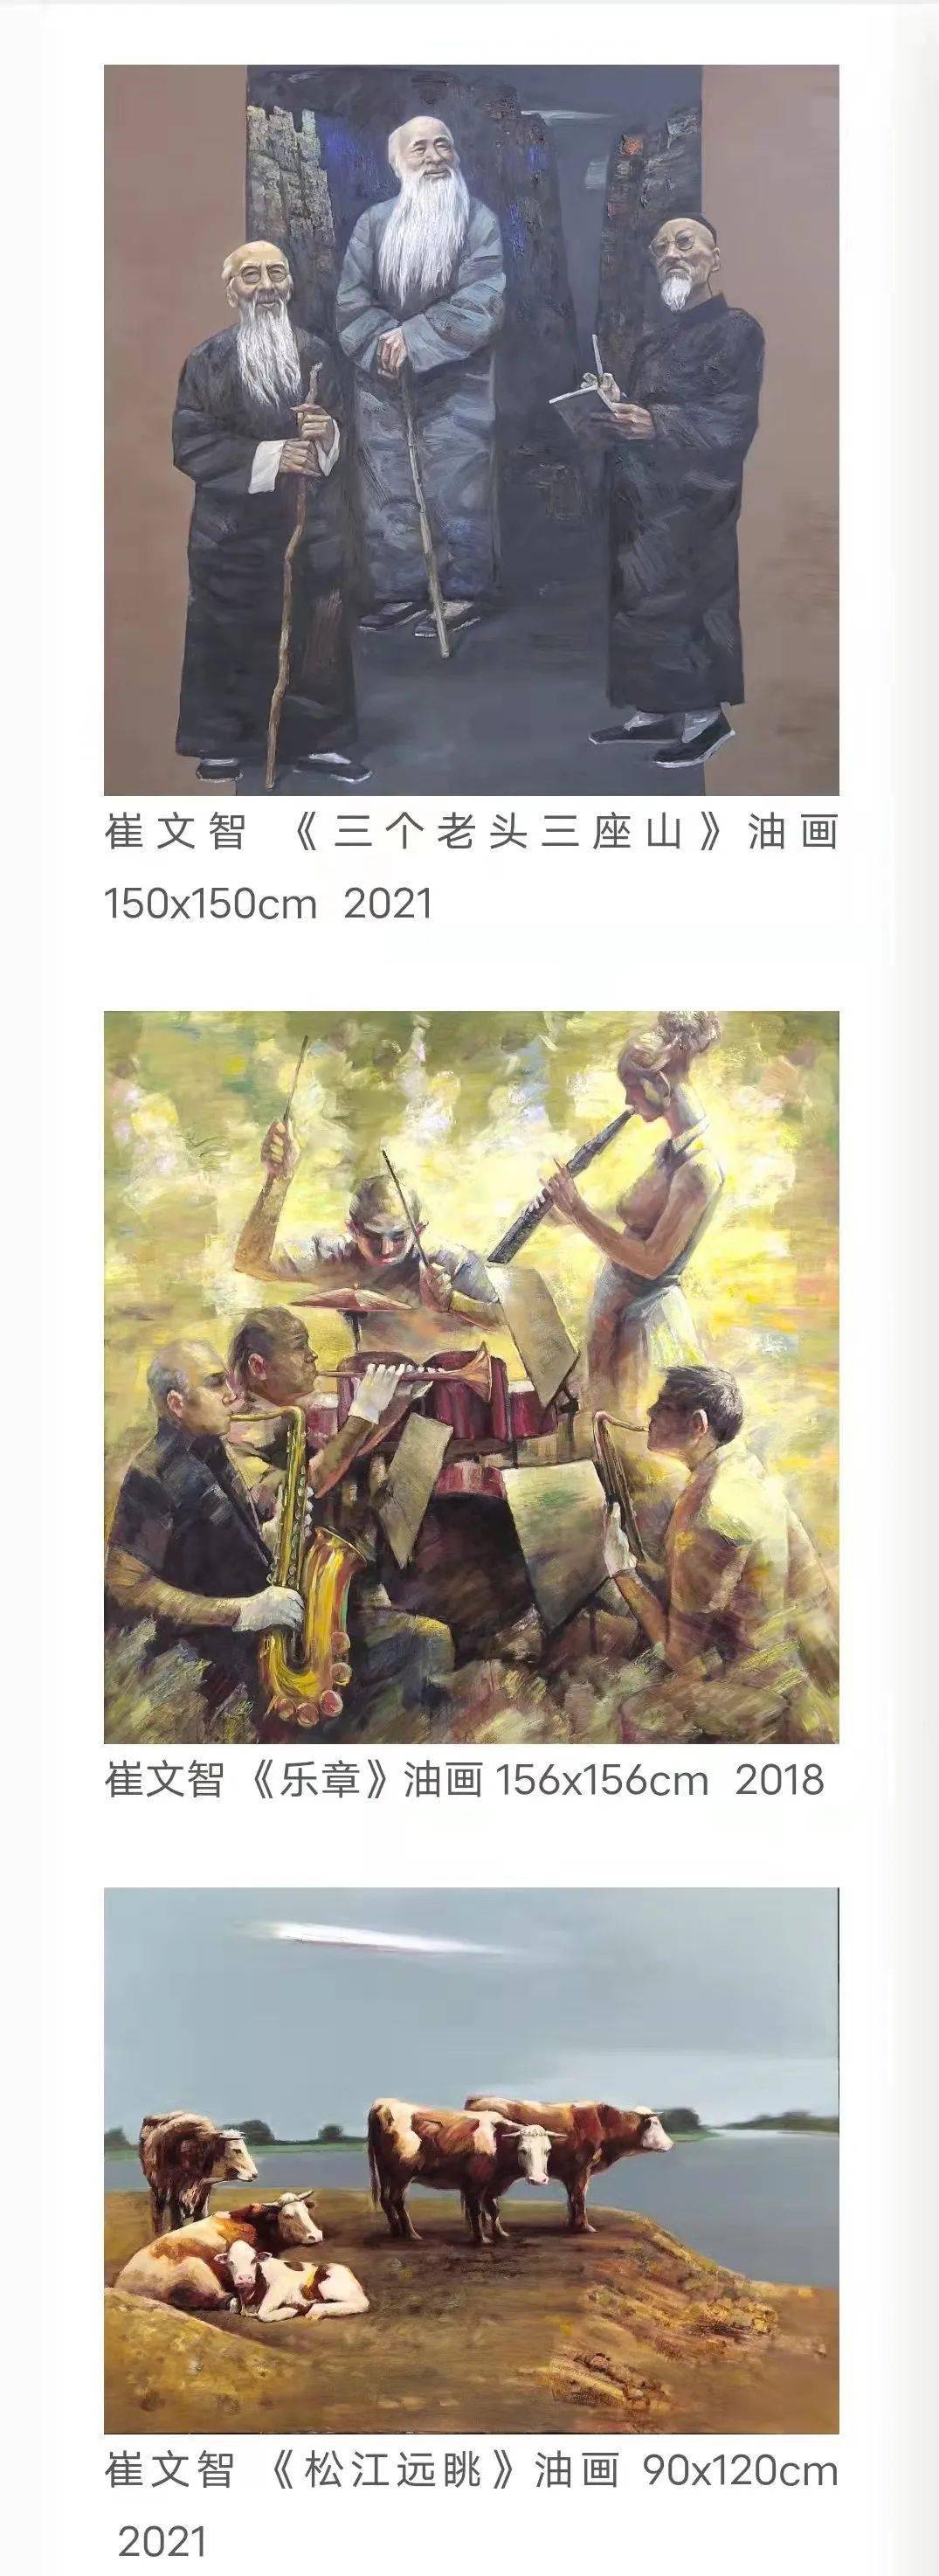 崔文智入展的三幅油画作品为《三个老头三座山》《乐章》《松江远眺》